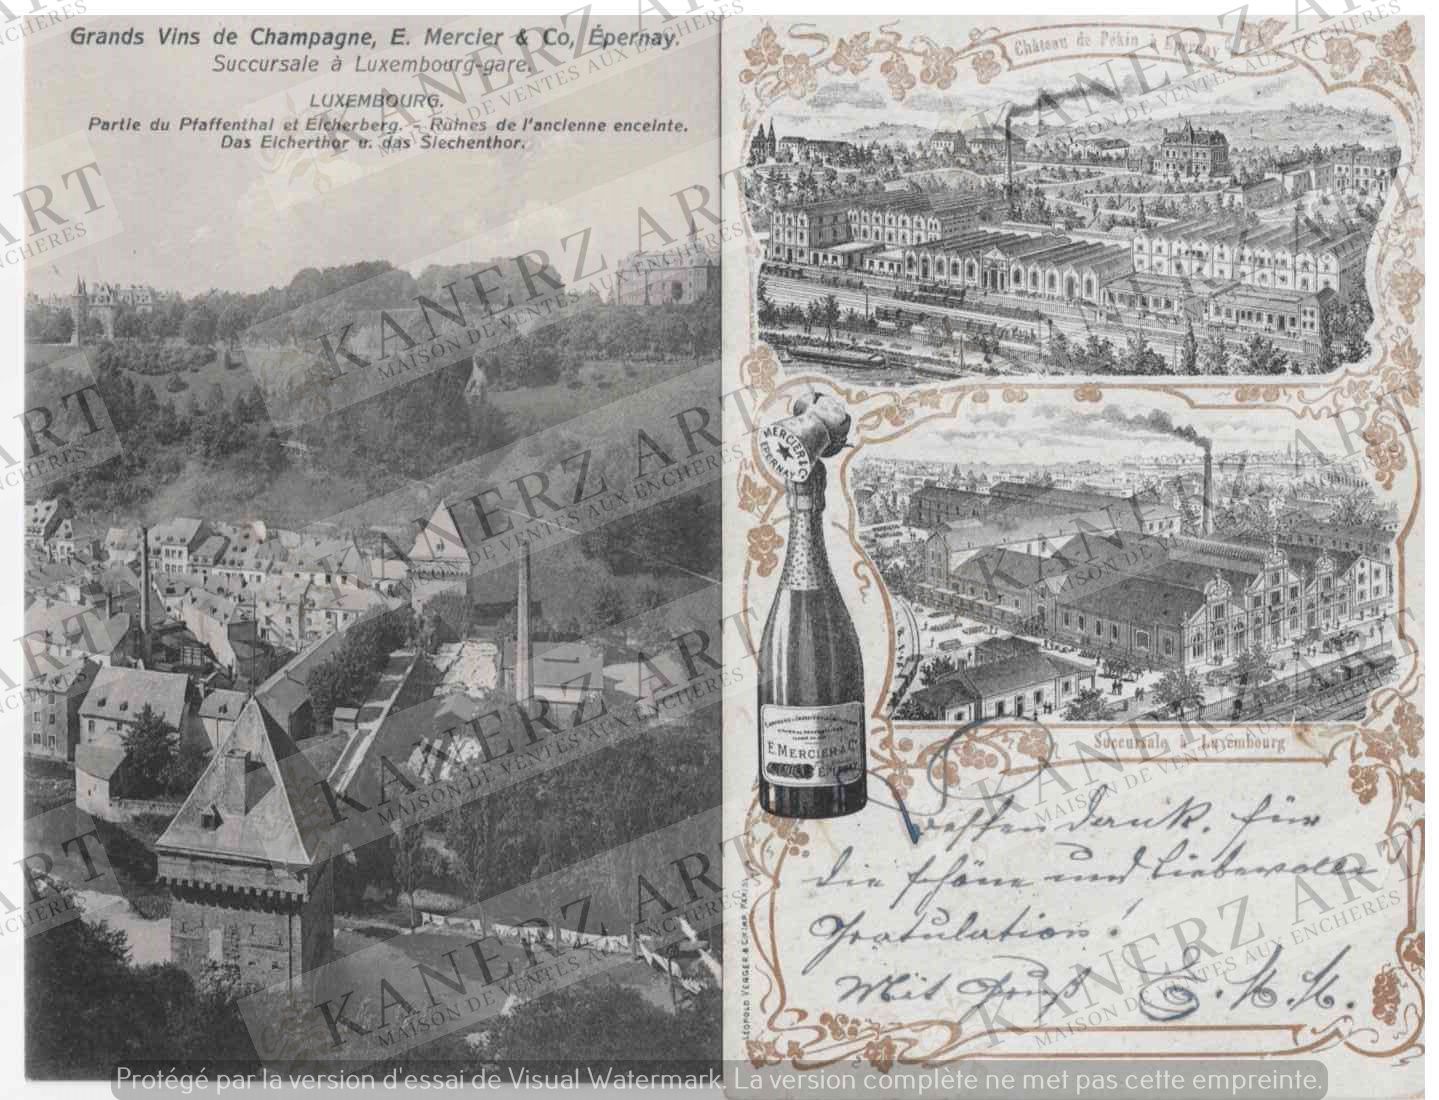 MERCIER (Champagne) 1. Château de Pékin à Epernay, succursale à Luxembourg, 1916&hellip;